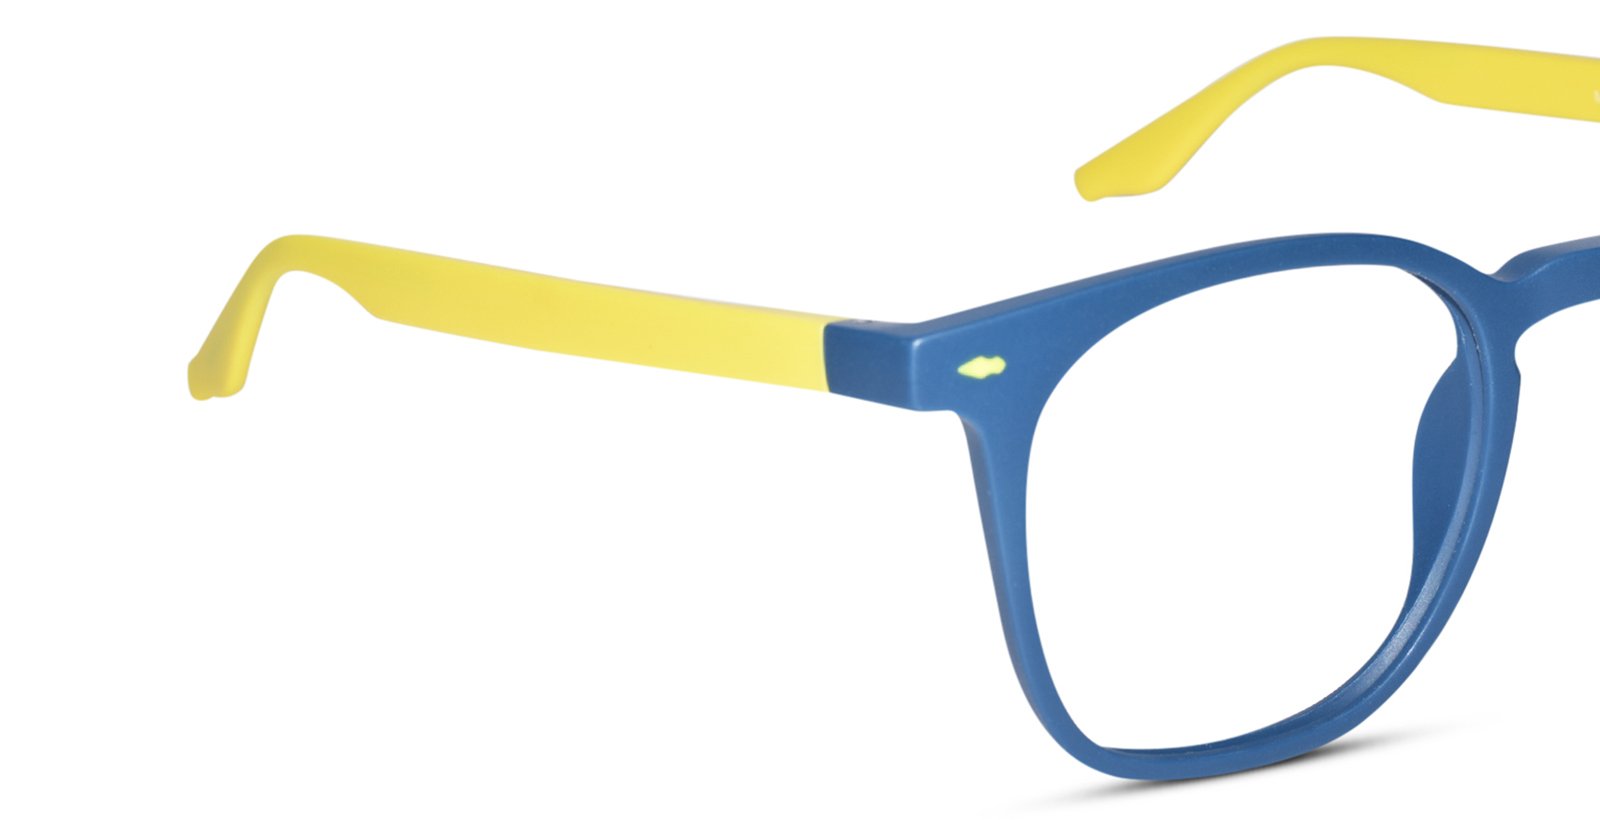 Stylish Matt Blue-Yellow Wayfarer Eyeglasses